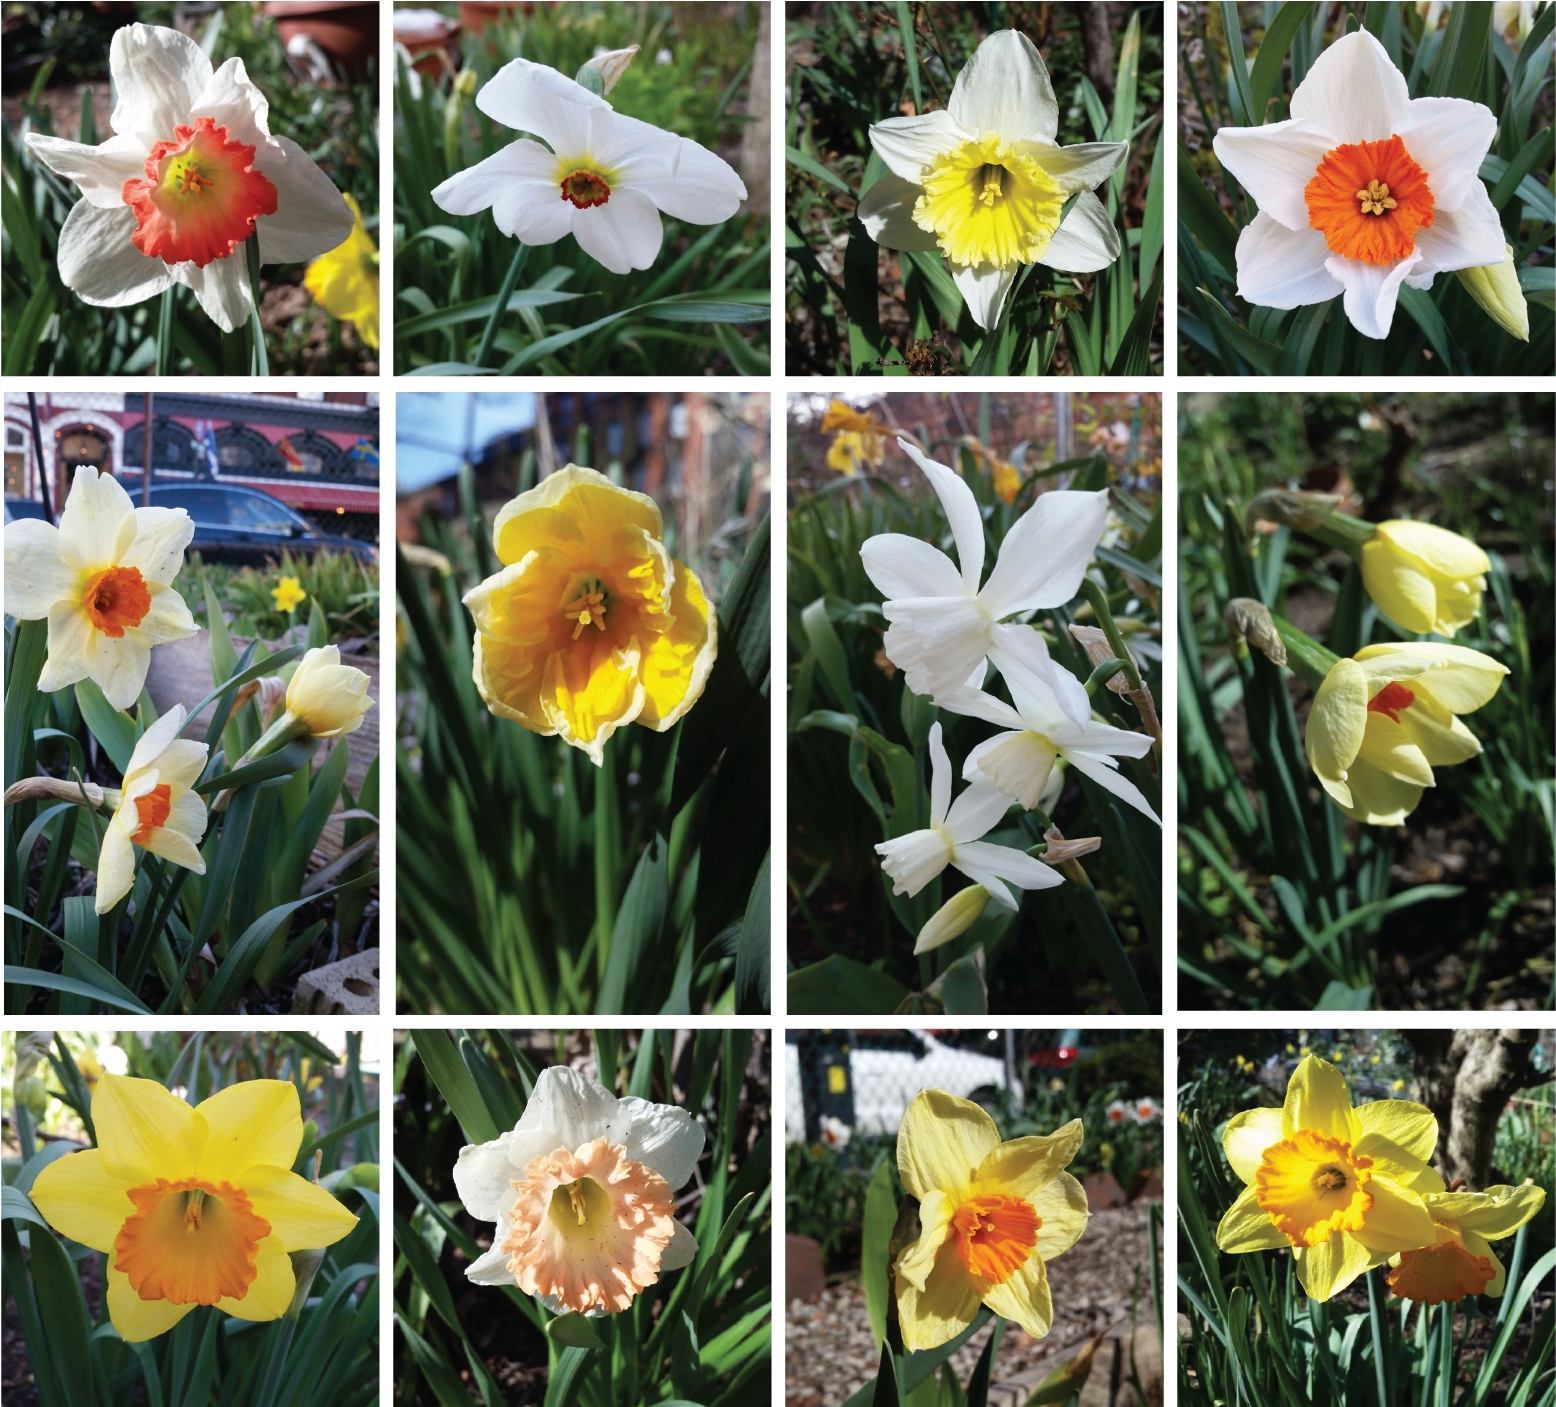 Varietiesof Narcissus Flowers